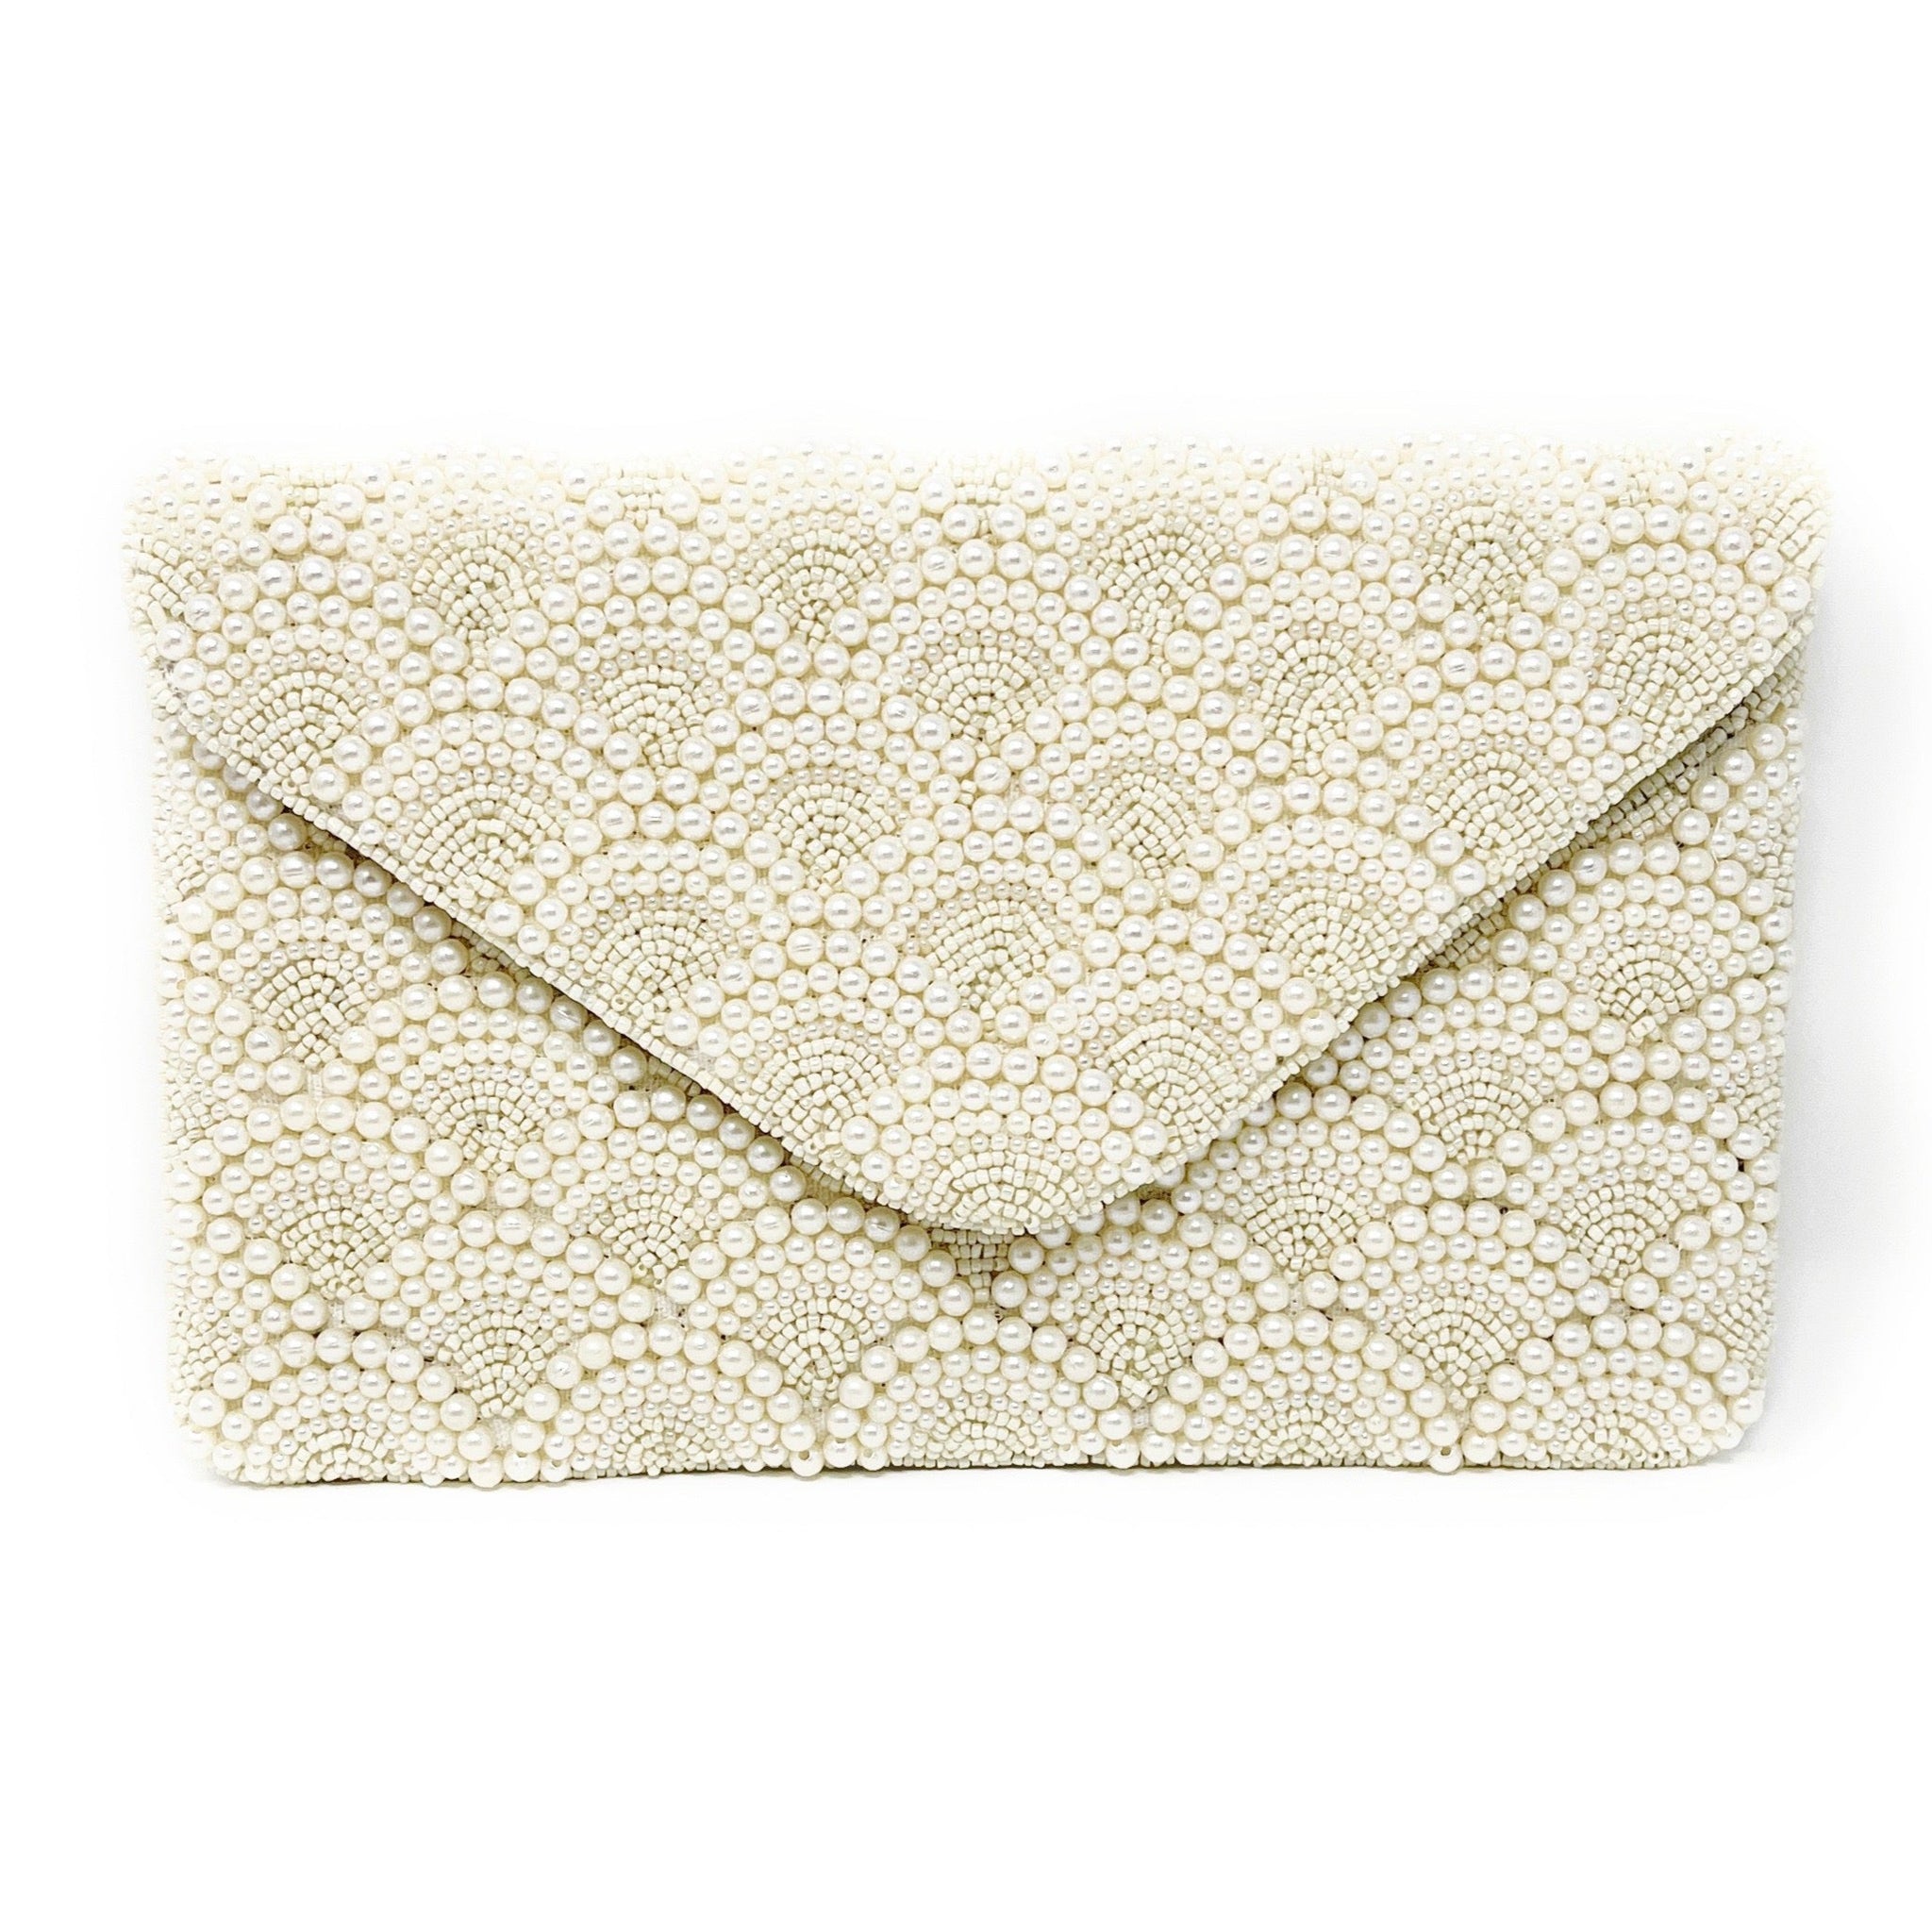 Silk Chiffon Bridal Clutch With Brooch, Wedding Clutch in White or Ivory -  Etsy | Fancy clutch purse, Fancy handbags, Bridal clutch